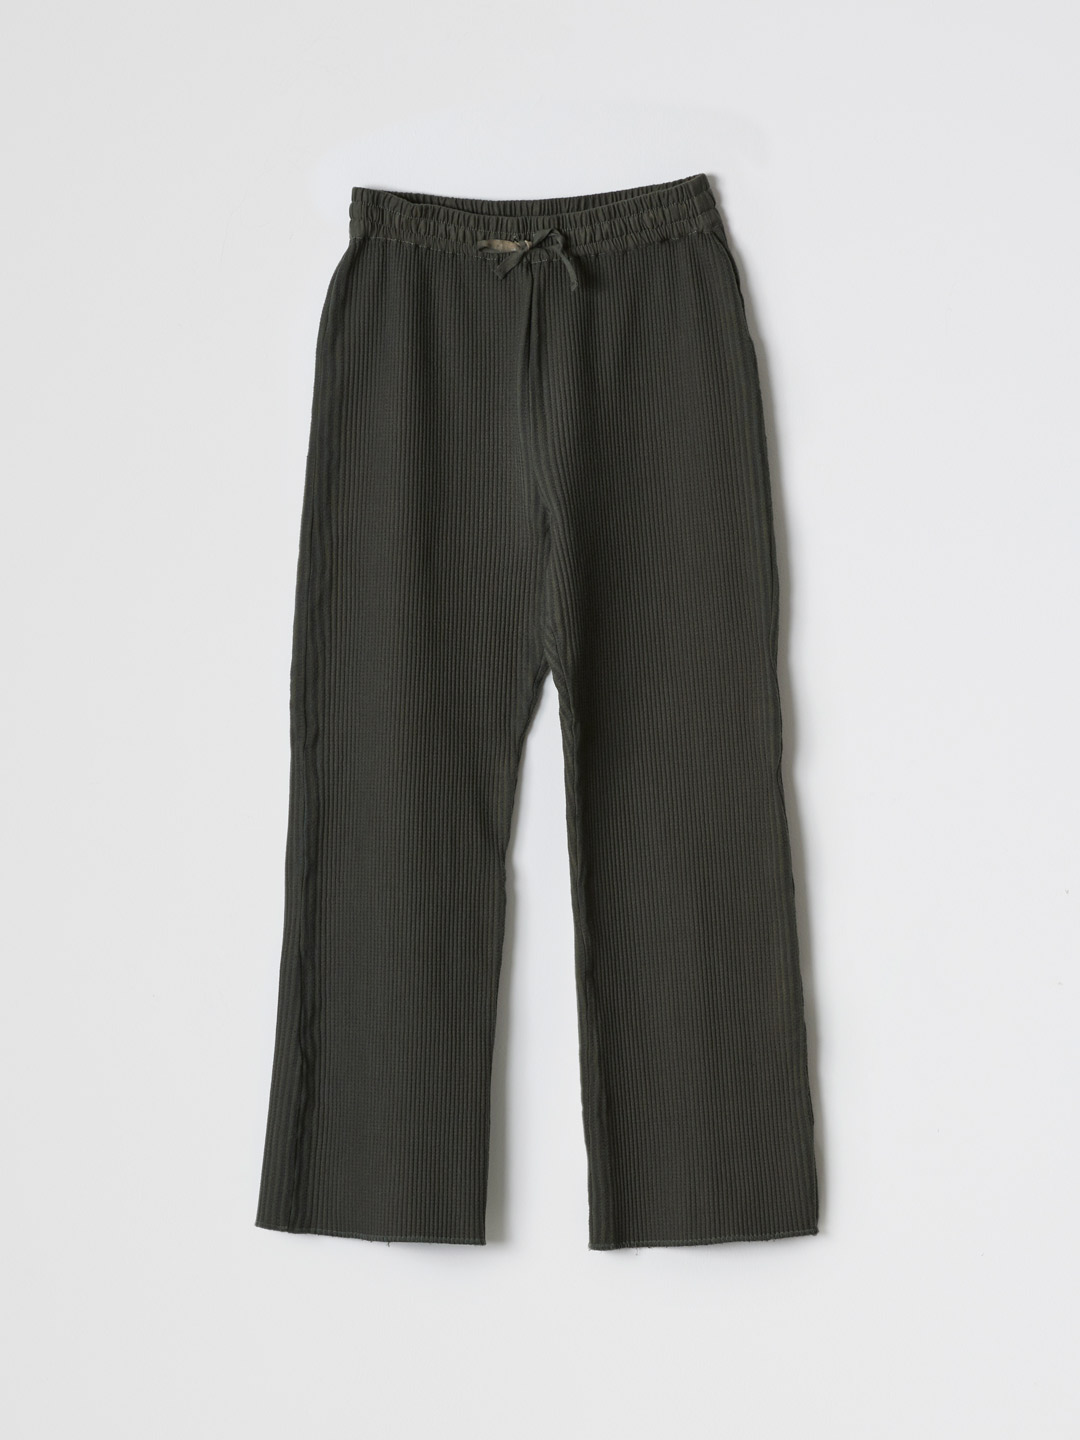 No.0015 Cotton Woven Rib Pants - Green